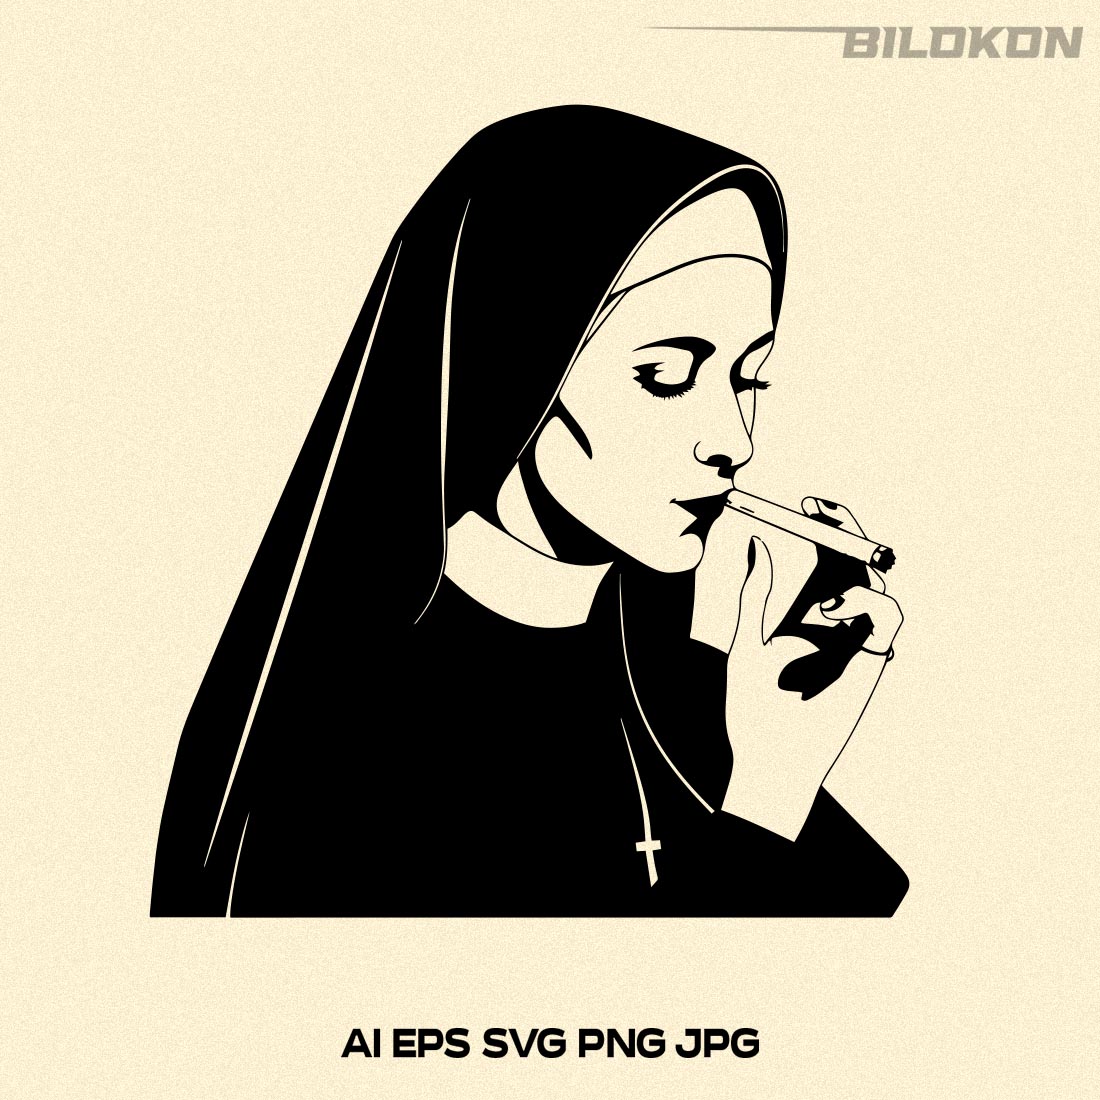 Nun Smoking, Bad Nun SVG Vector preview image.